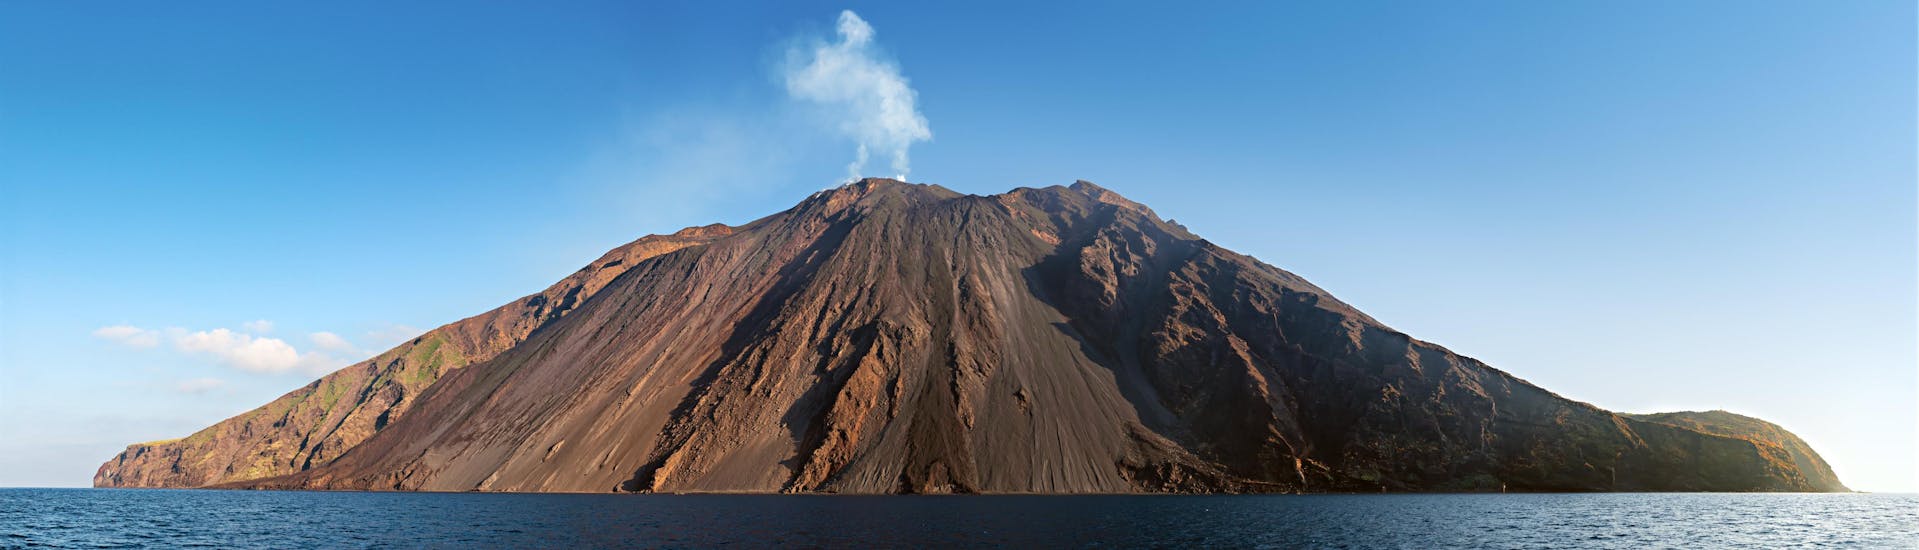 Imagen del volcán Stromboli, un popular lugar de interés turístico en Sicilia.